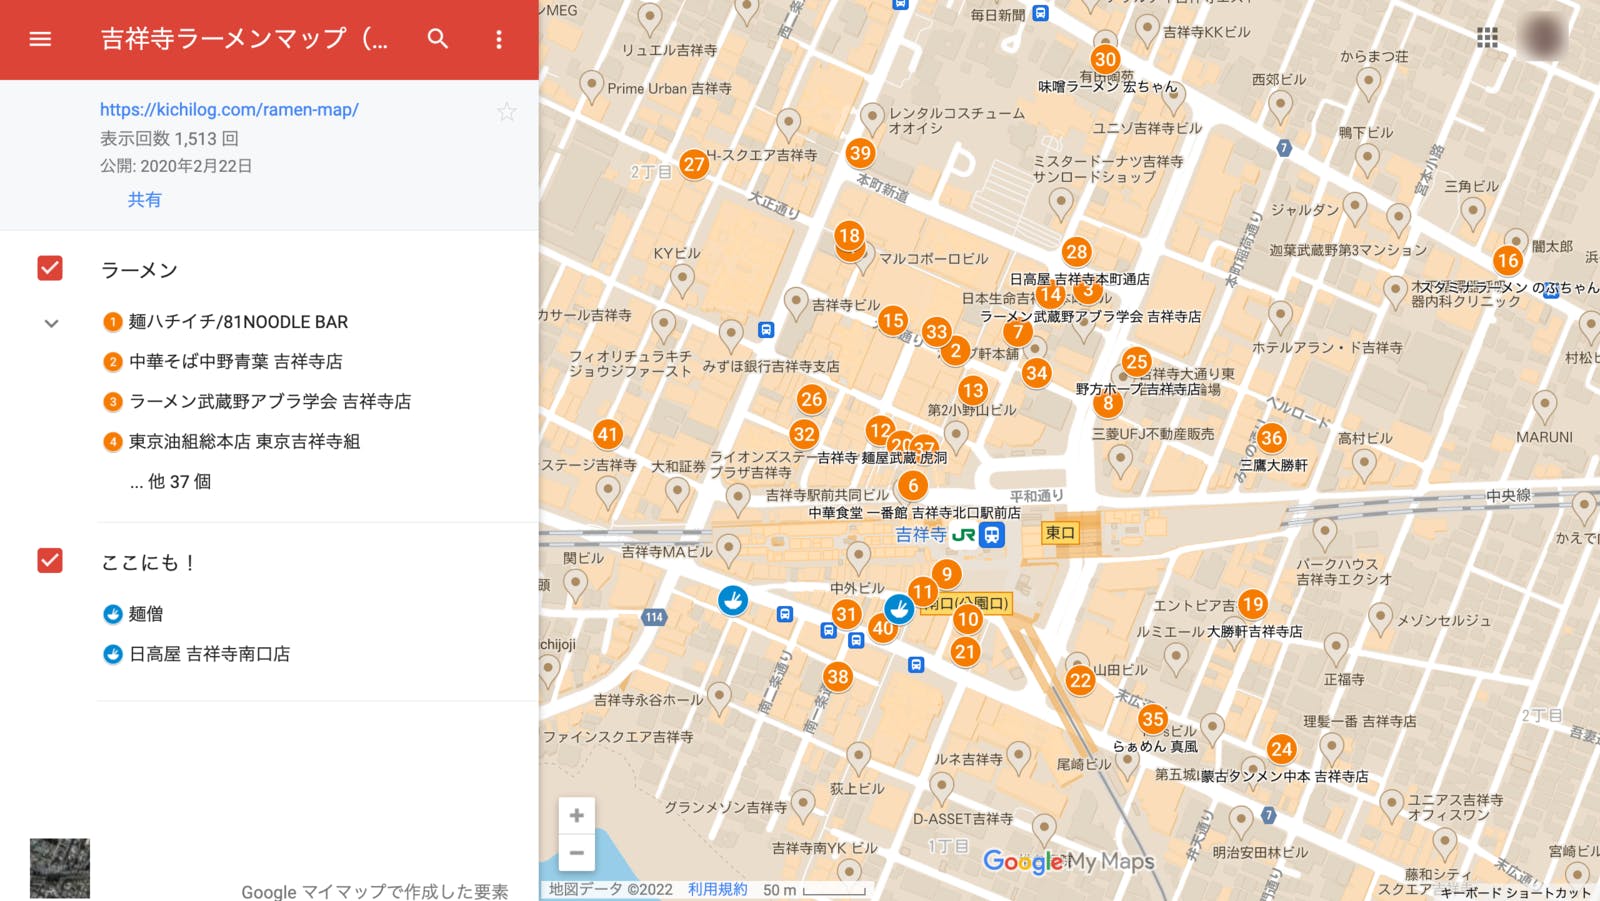 Googleマイマップで公開されている吉祥寺のラーメンマップ